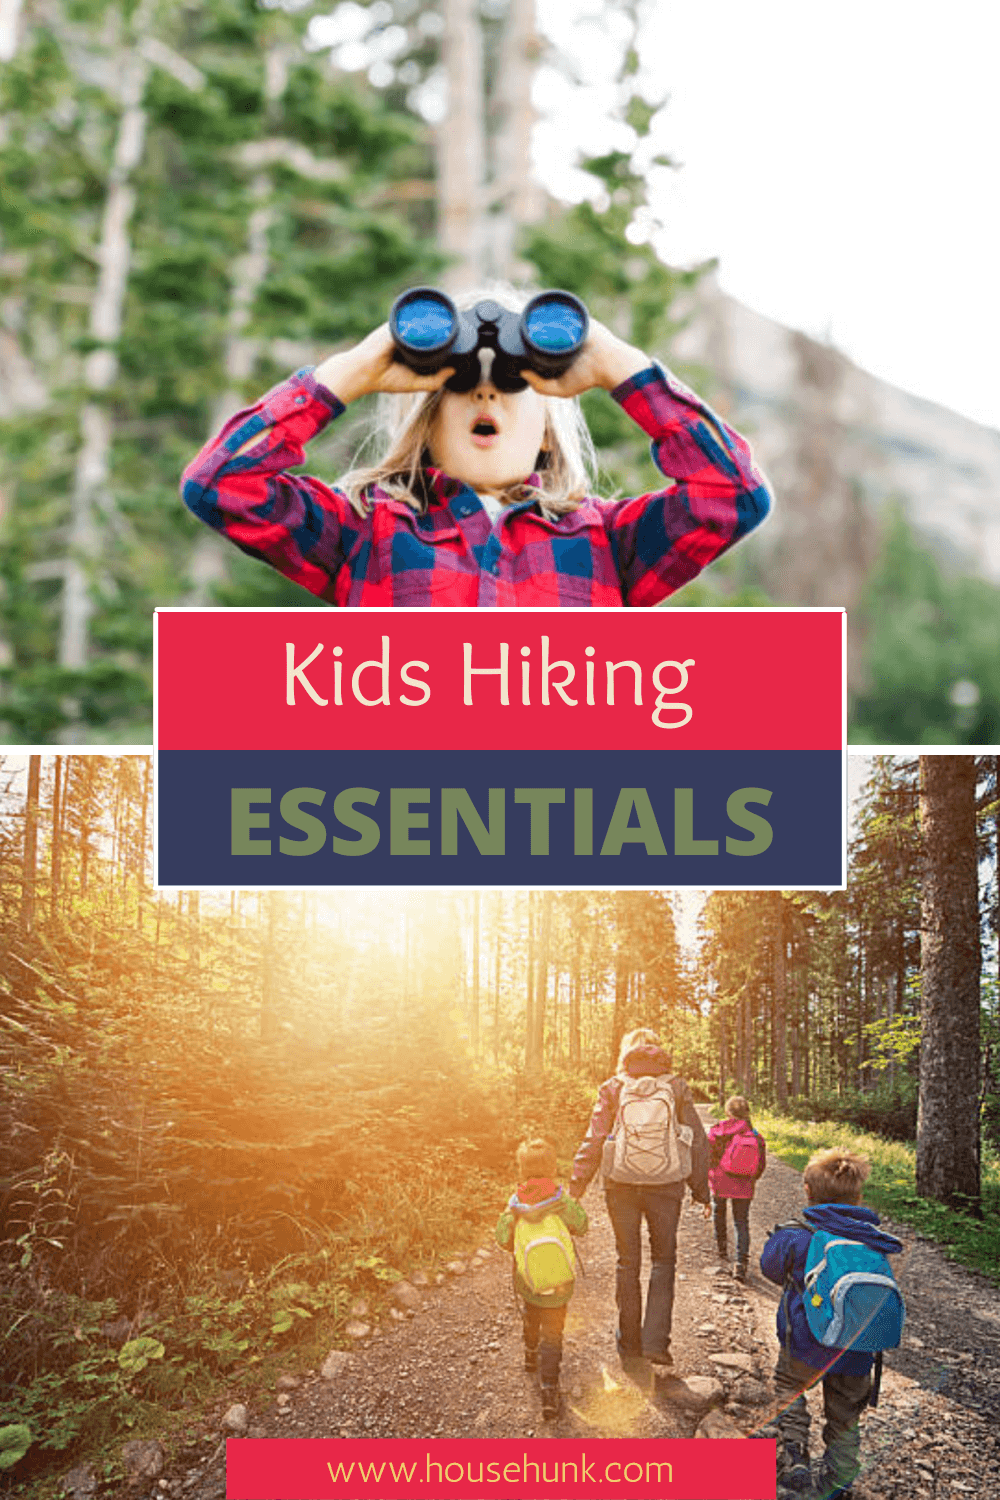 Kids Hiking Essentials Essentials Pinterest Pin